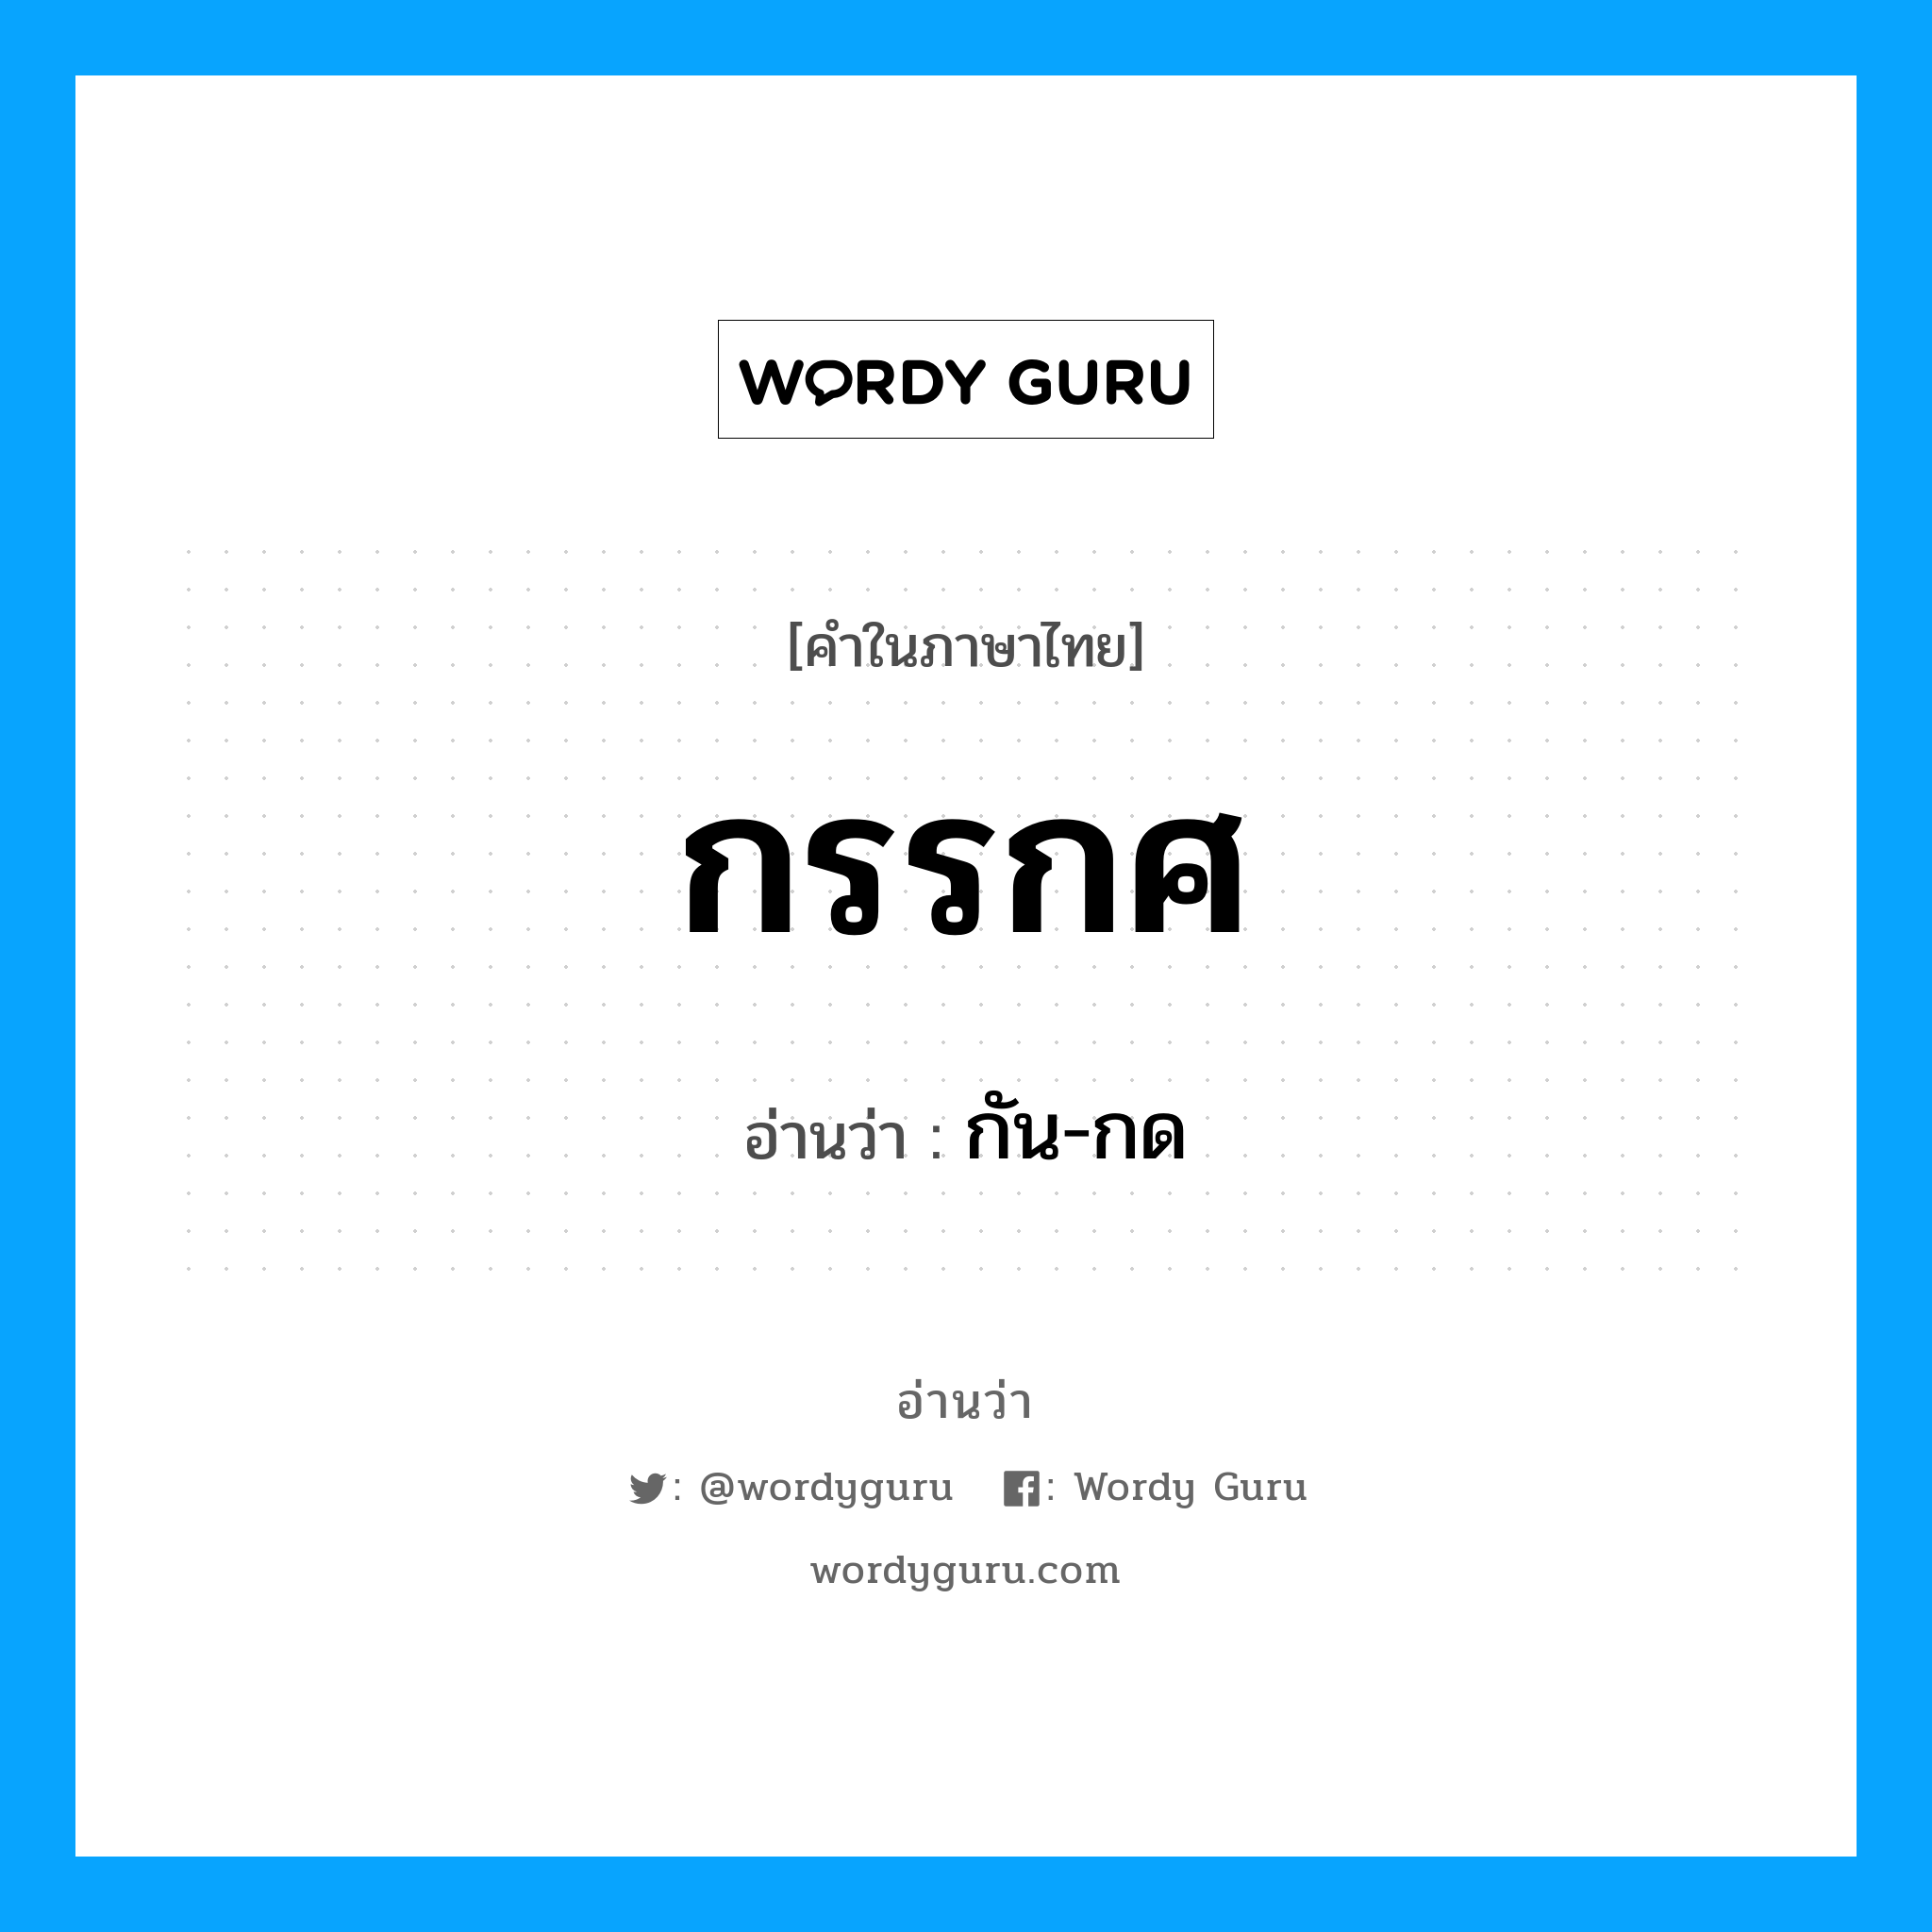 กัน-กด เป็นคำอ่านของคำไหน?, คำในภาษาไทย กัน-กด อ่านว่า กรรกศ